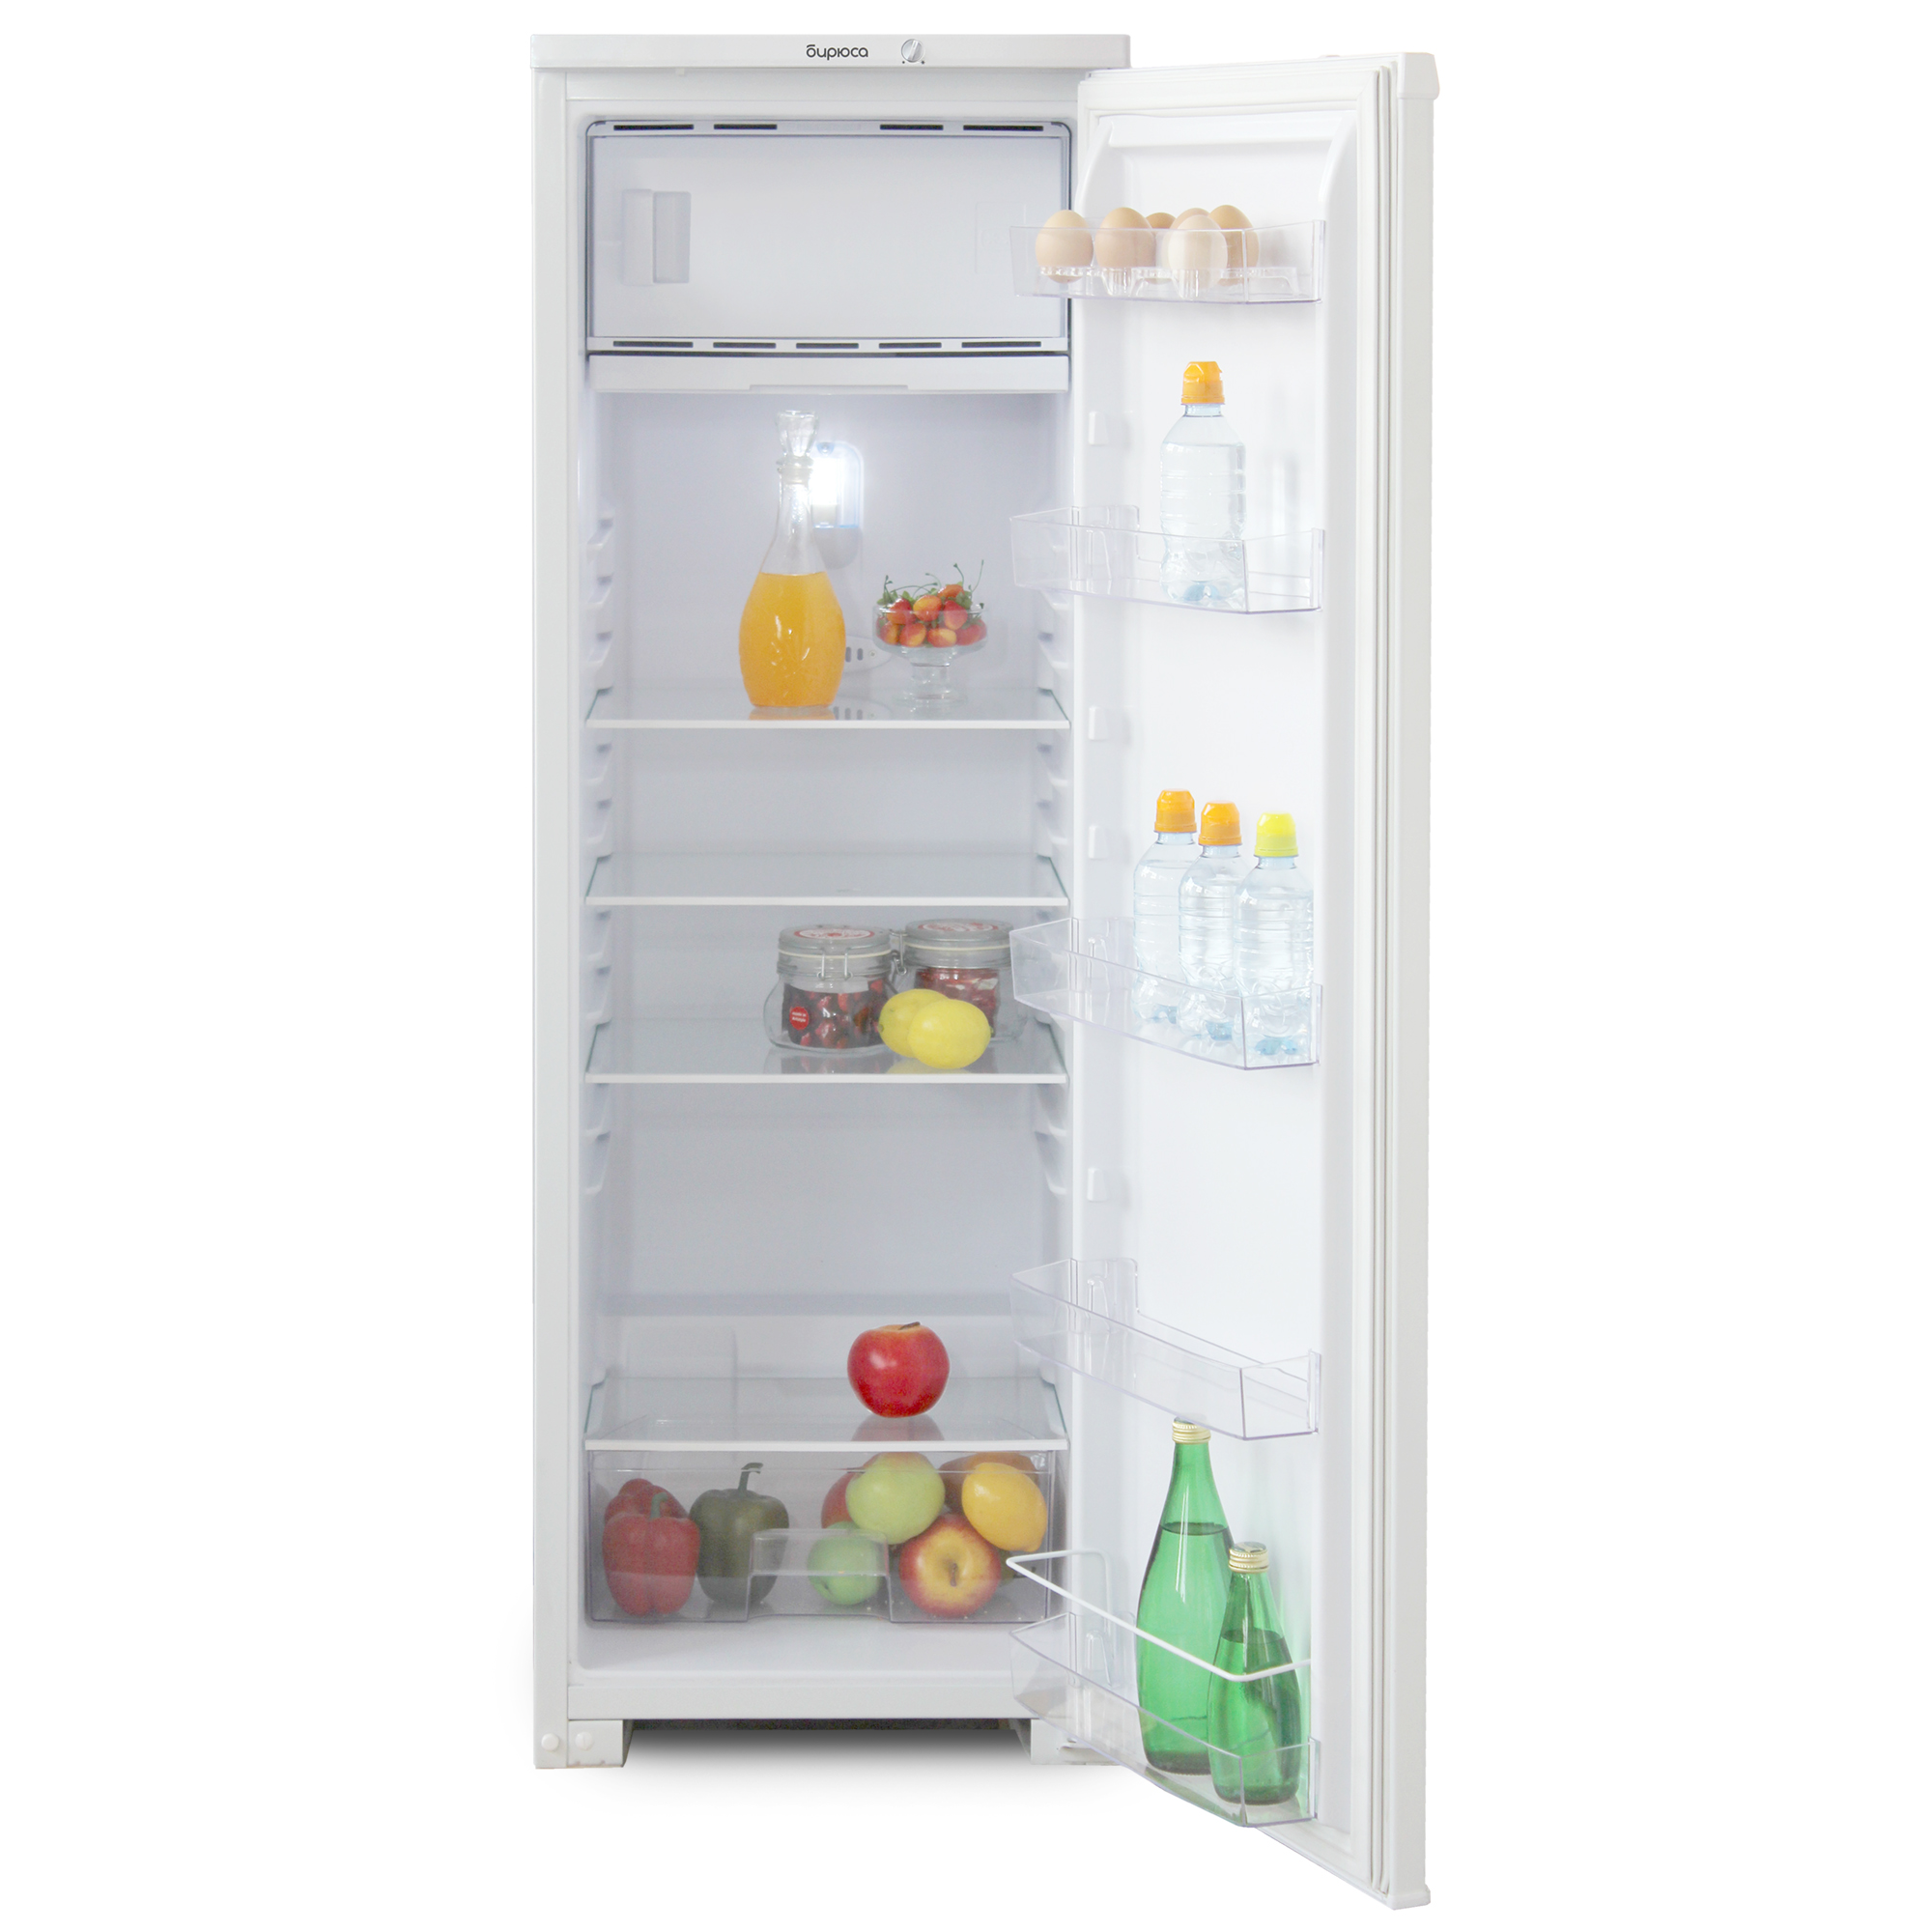 Холодильник Бирюса 107 фото